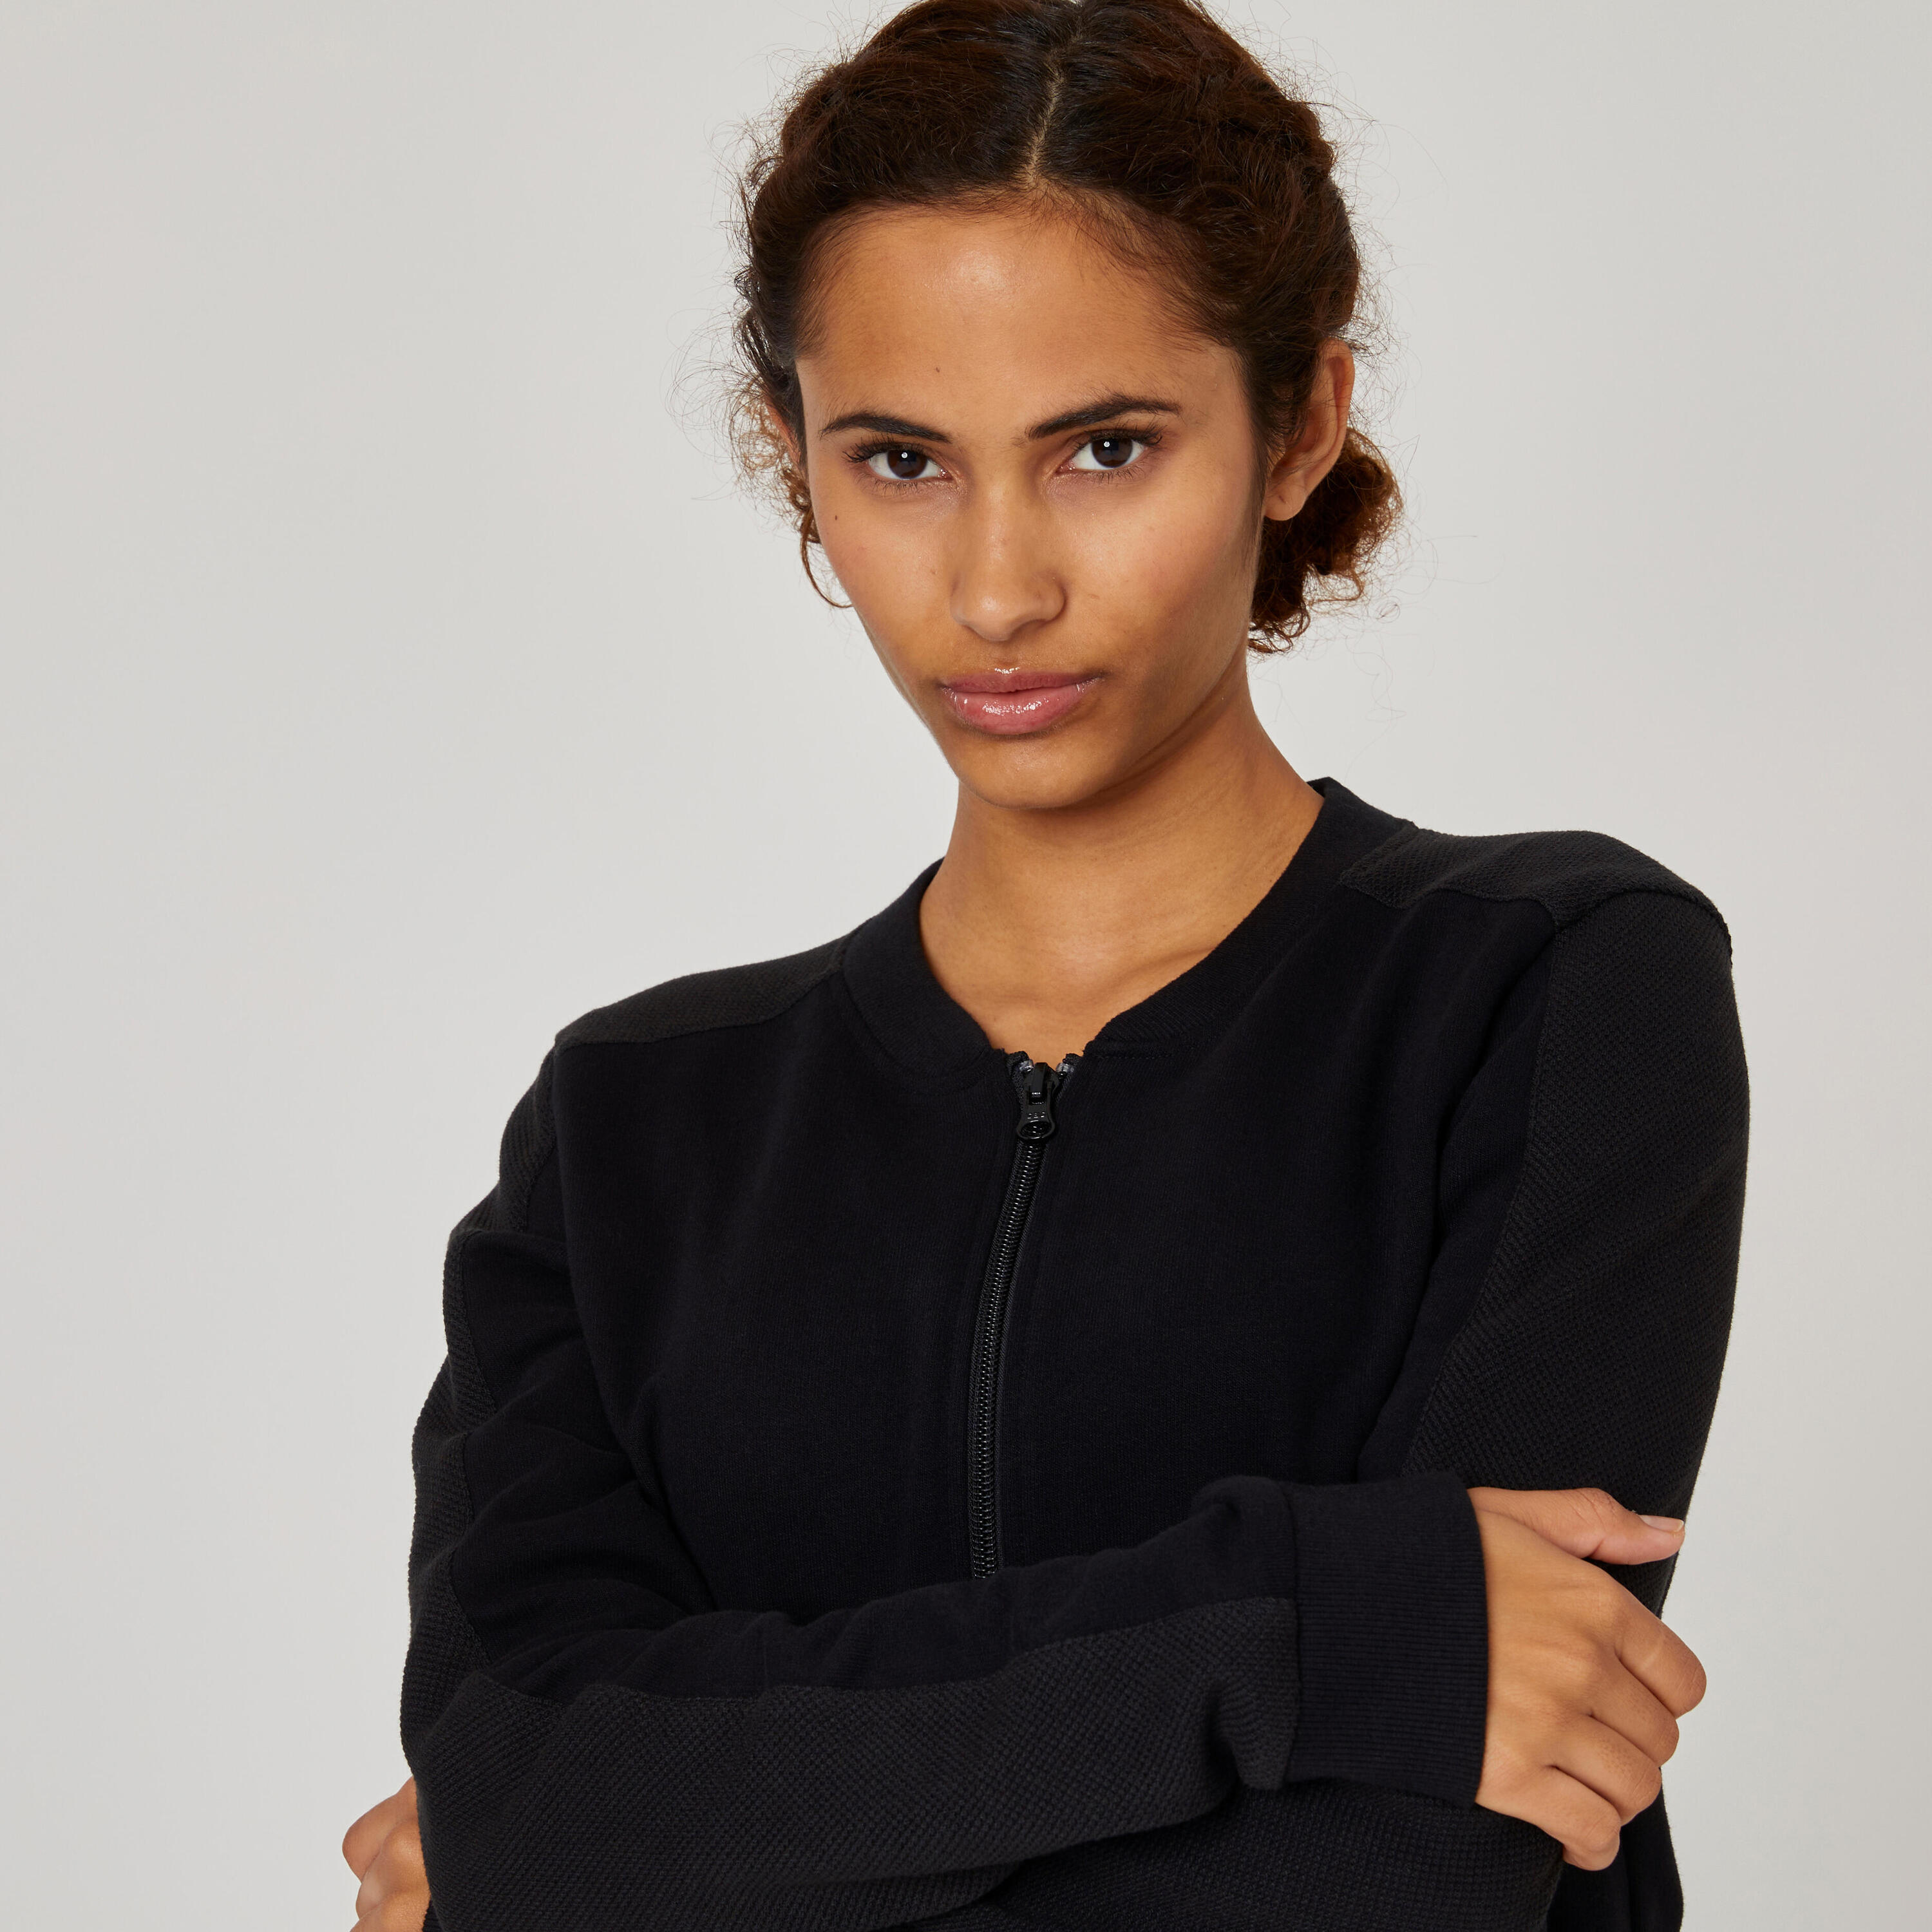 Women's Zip-Up Fitness Sweatshirt 520 - Black 4/5